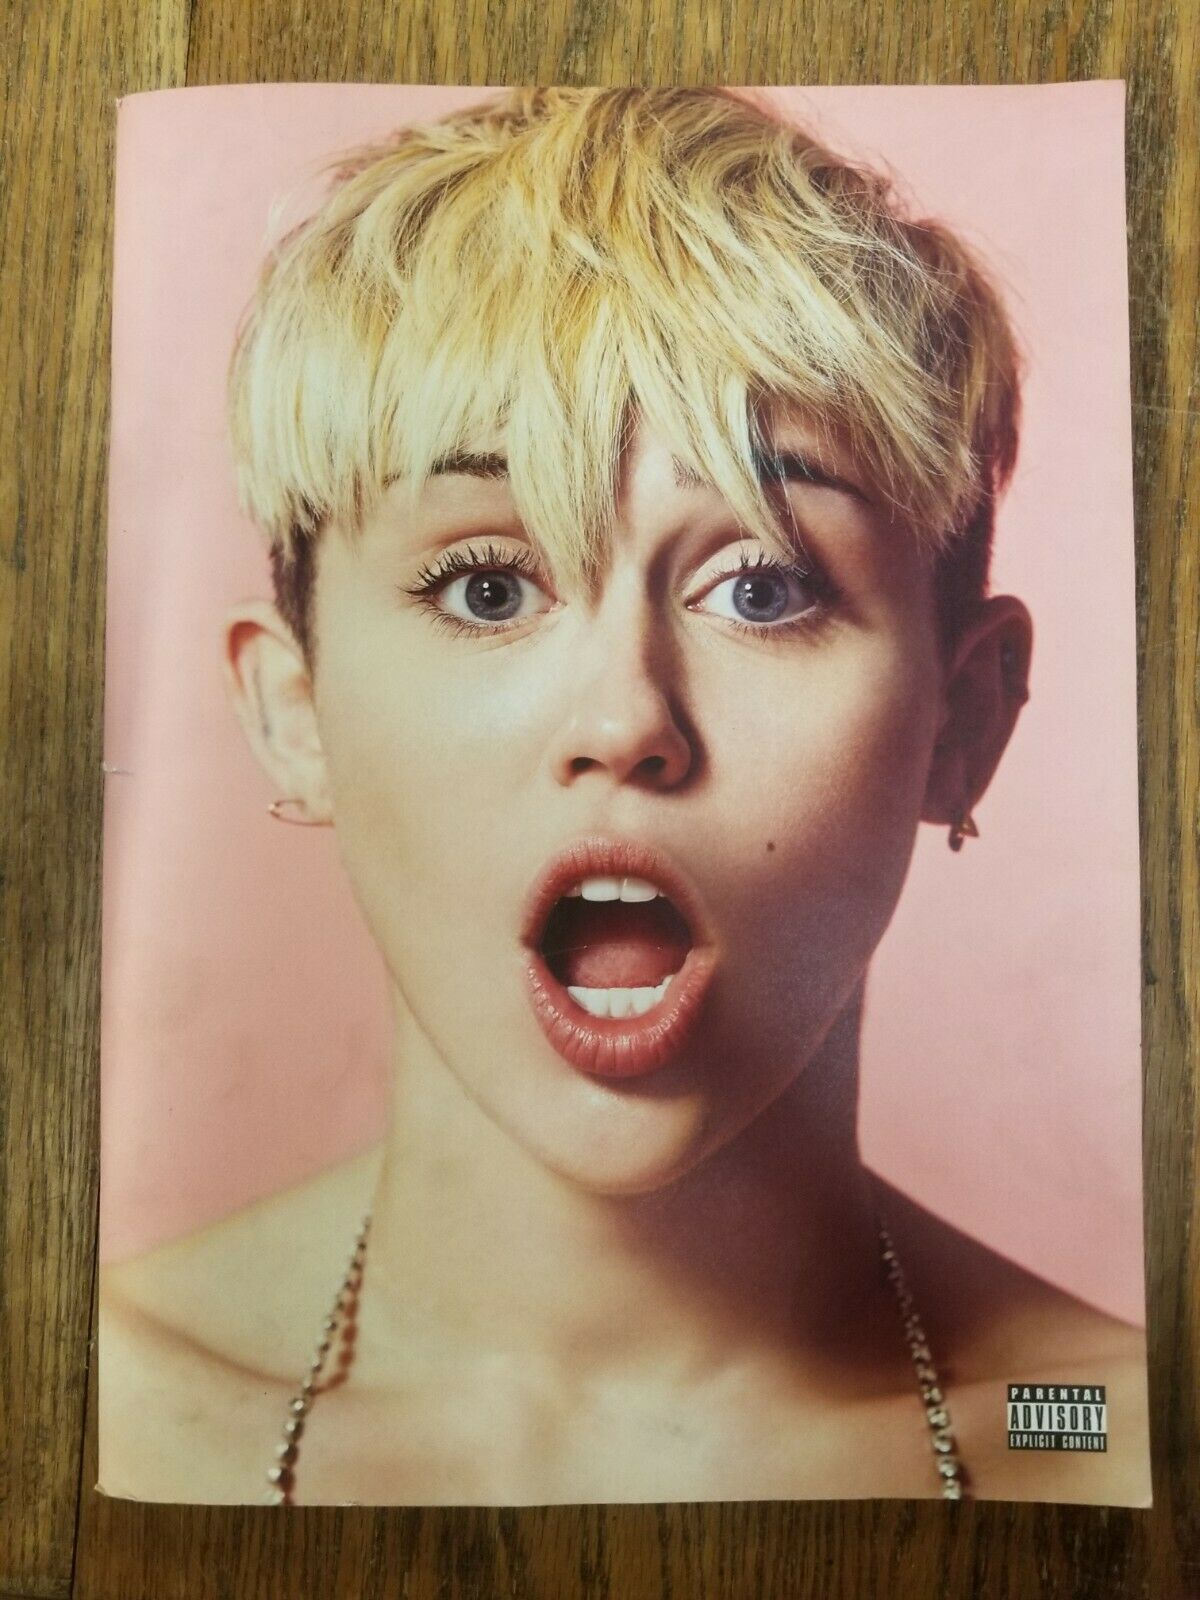 Miley Cyrus 2014 Bangerz Tour Exclusive Program - Explicit Version